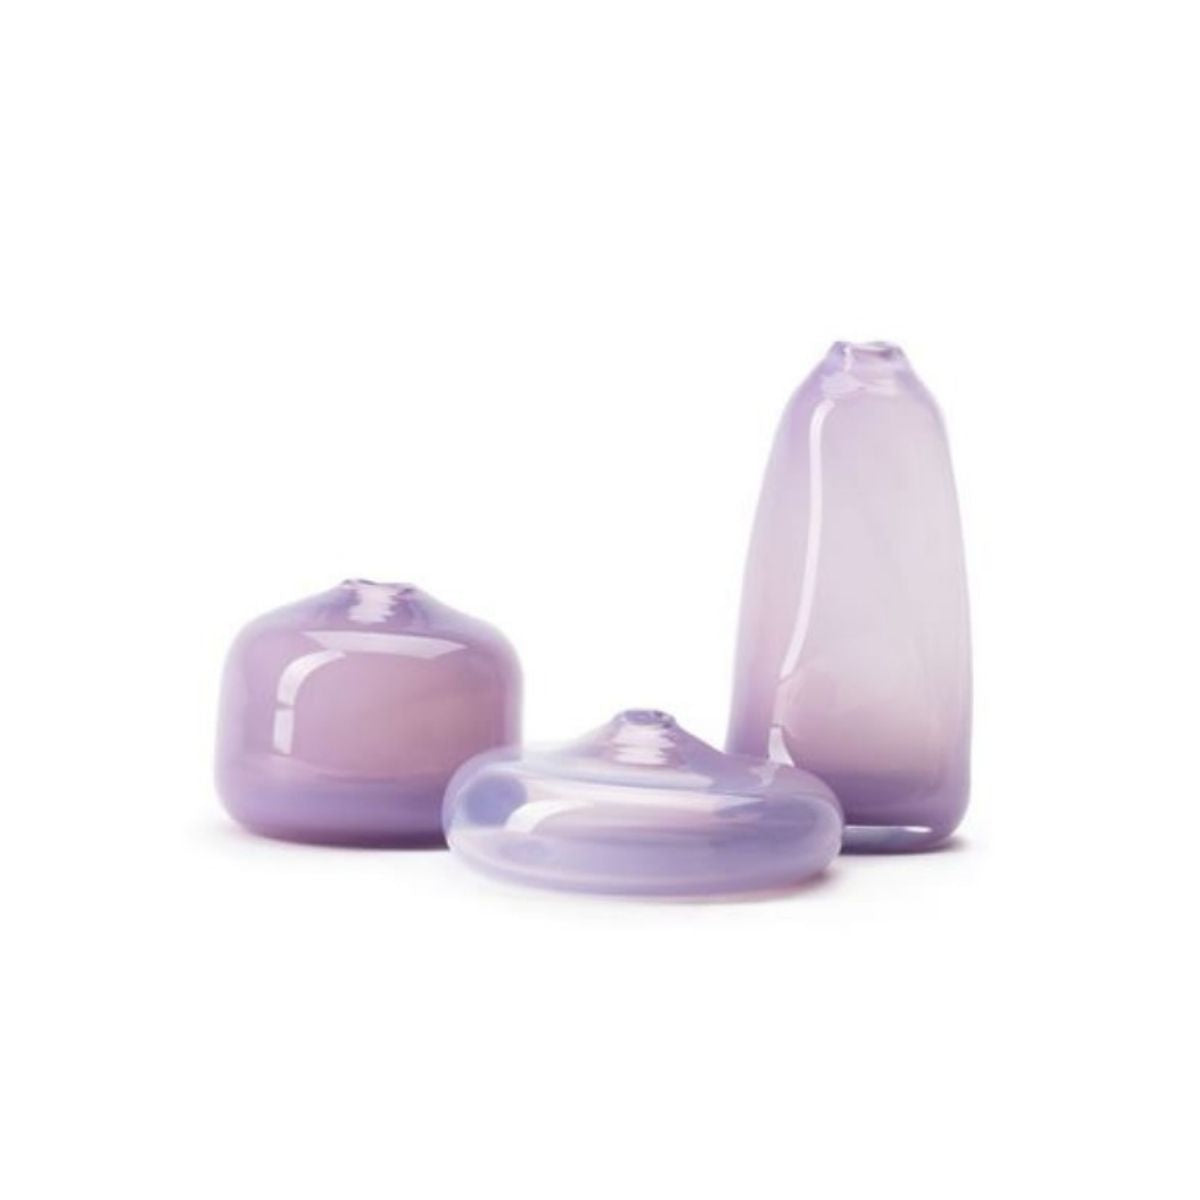 Little Gem Vases, Lilac-Bespoke Designs